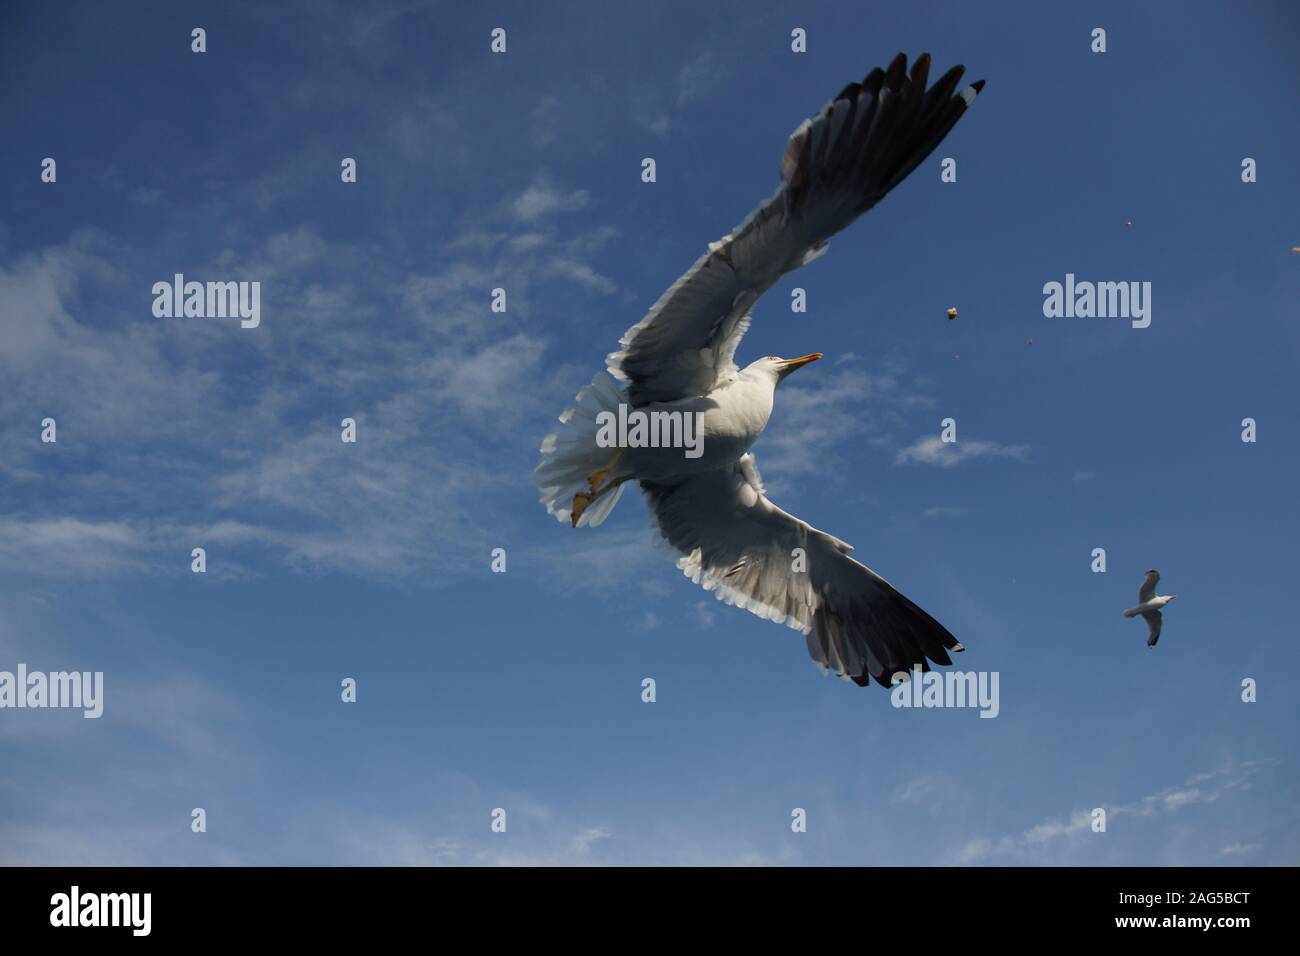 Inquadratura ad angolo basso di un bellissimo falco pescatore selvaggio con grandi ali che volano in alto nel cielo Foto Stock